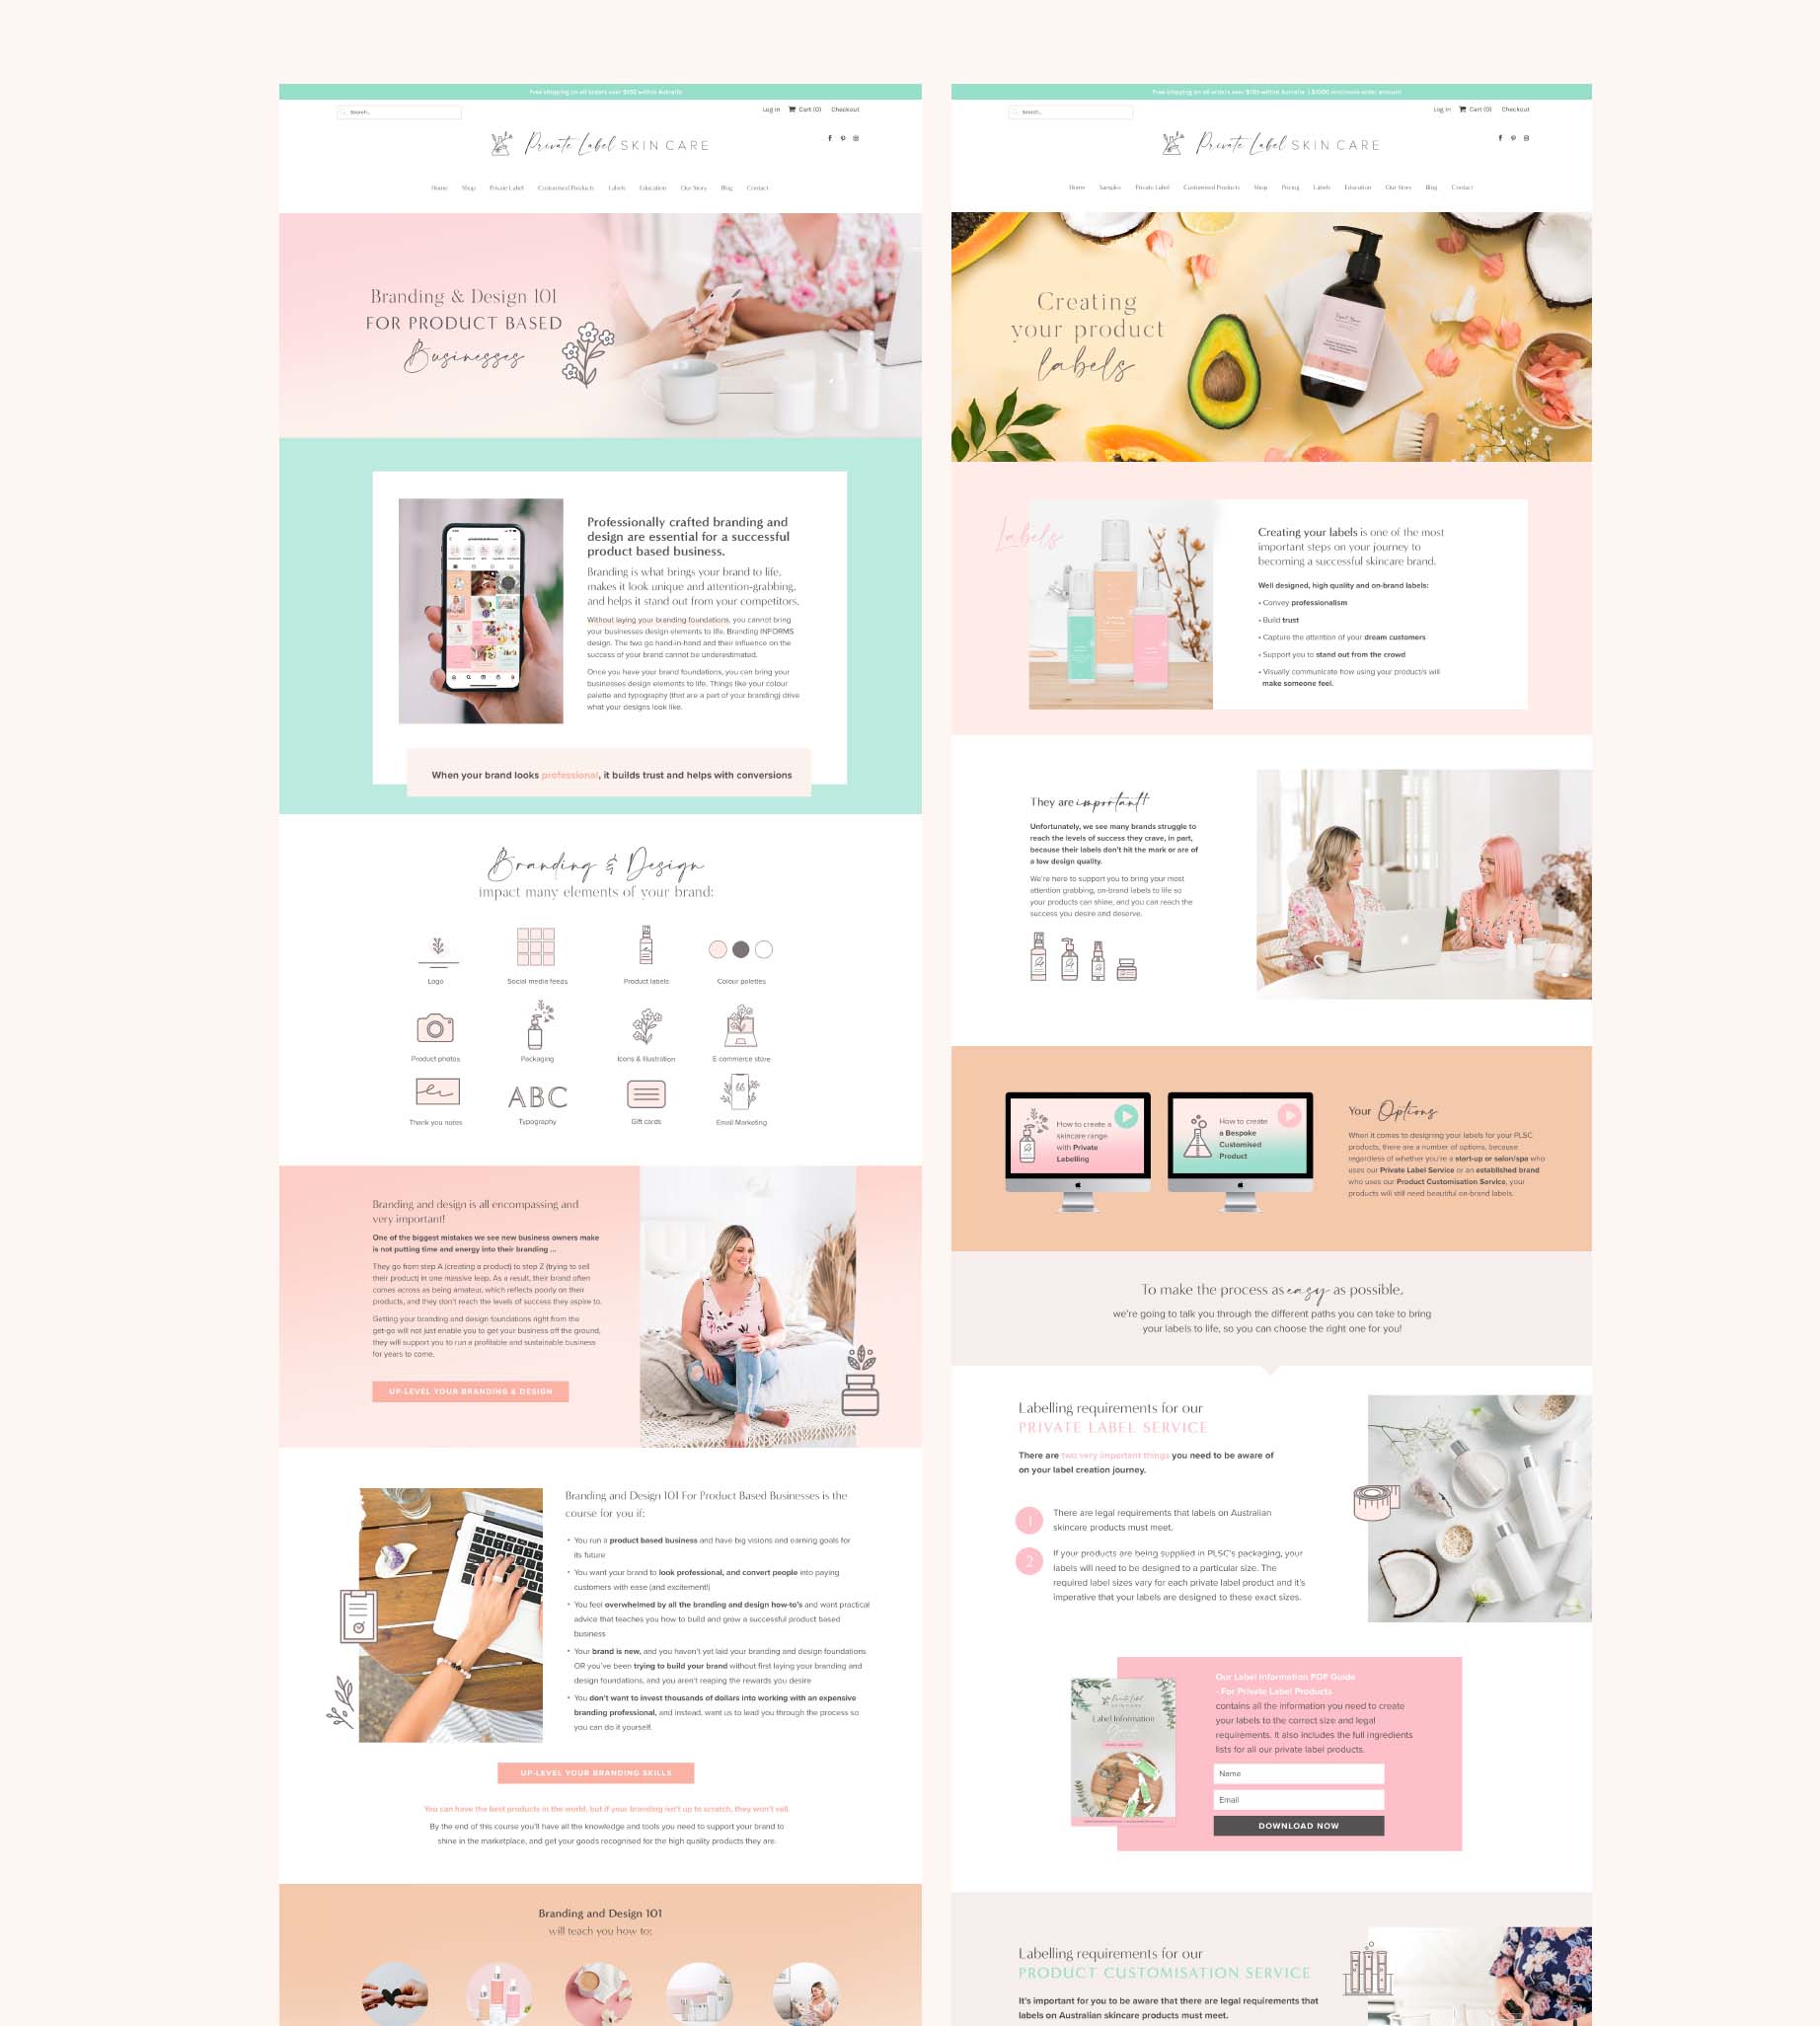 private label skincare branding web design layouts